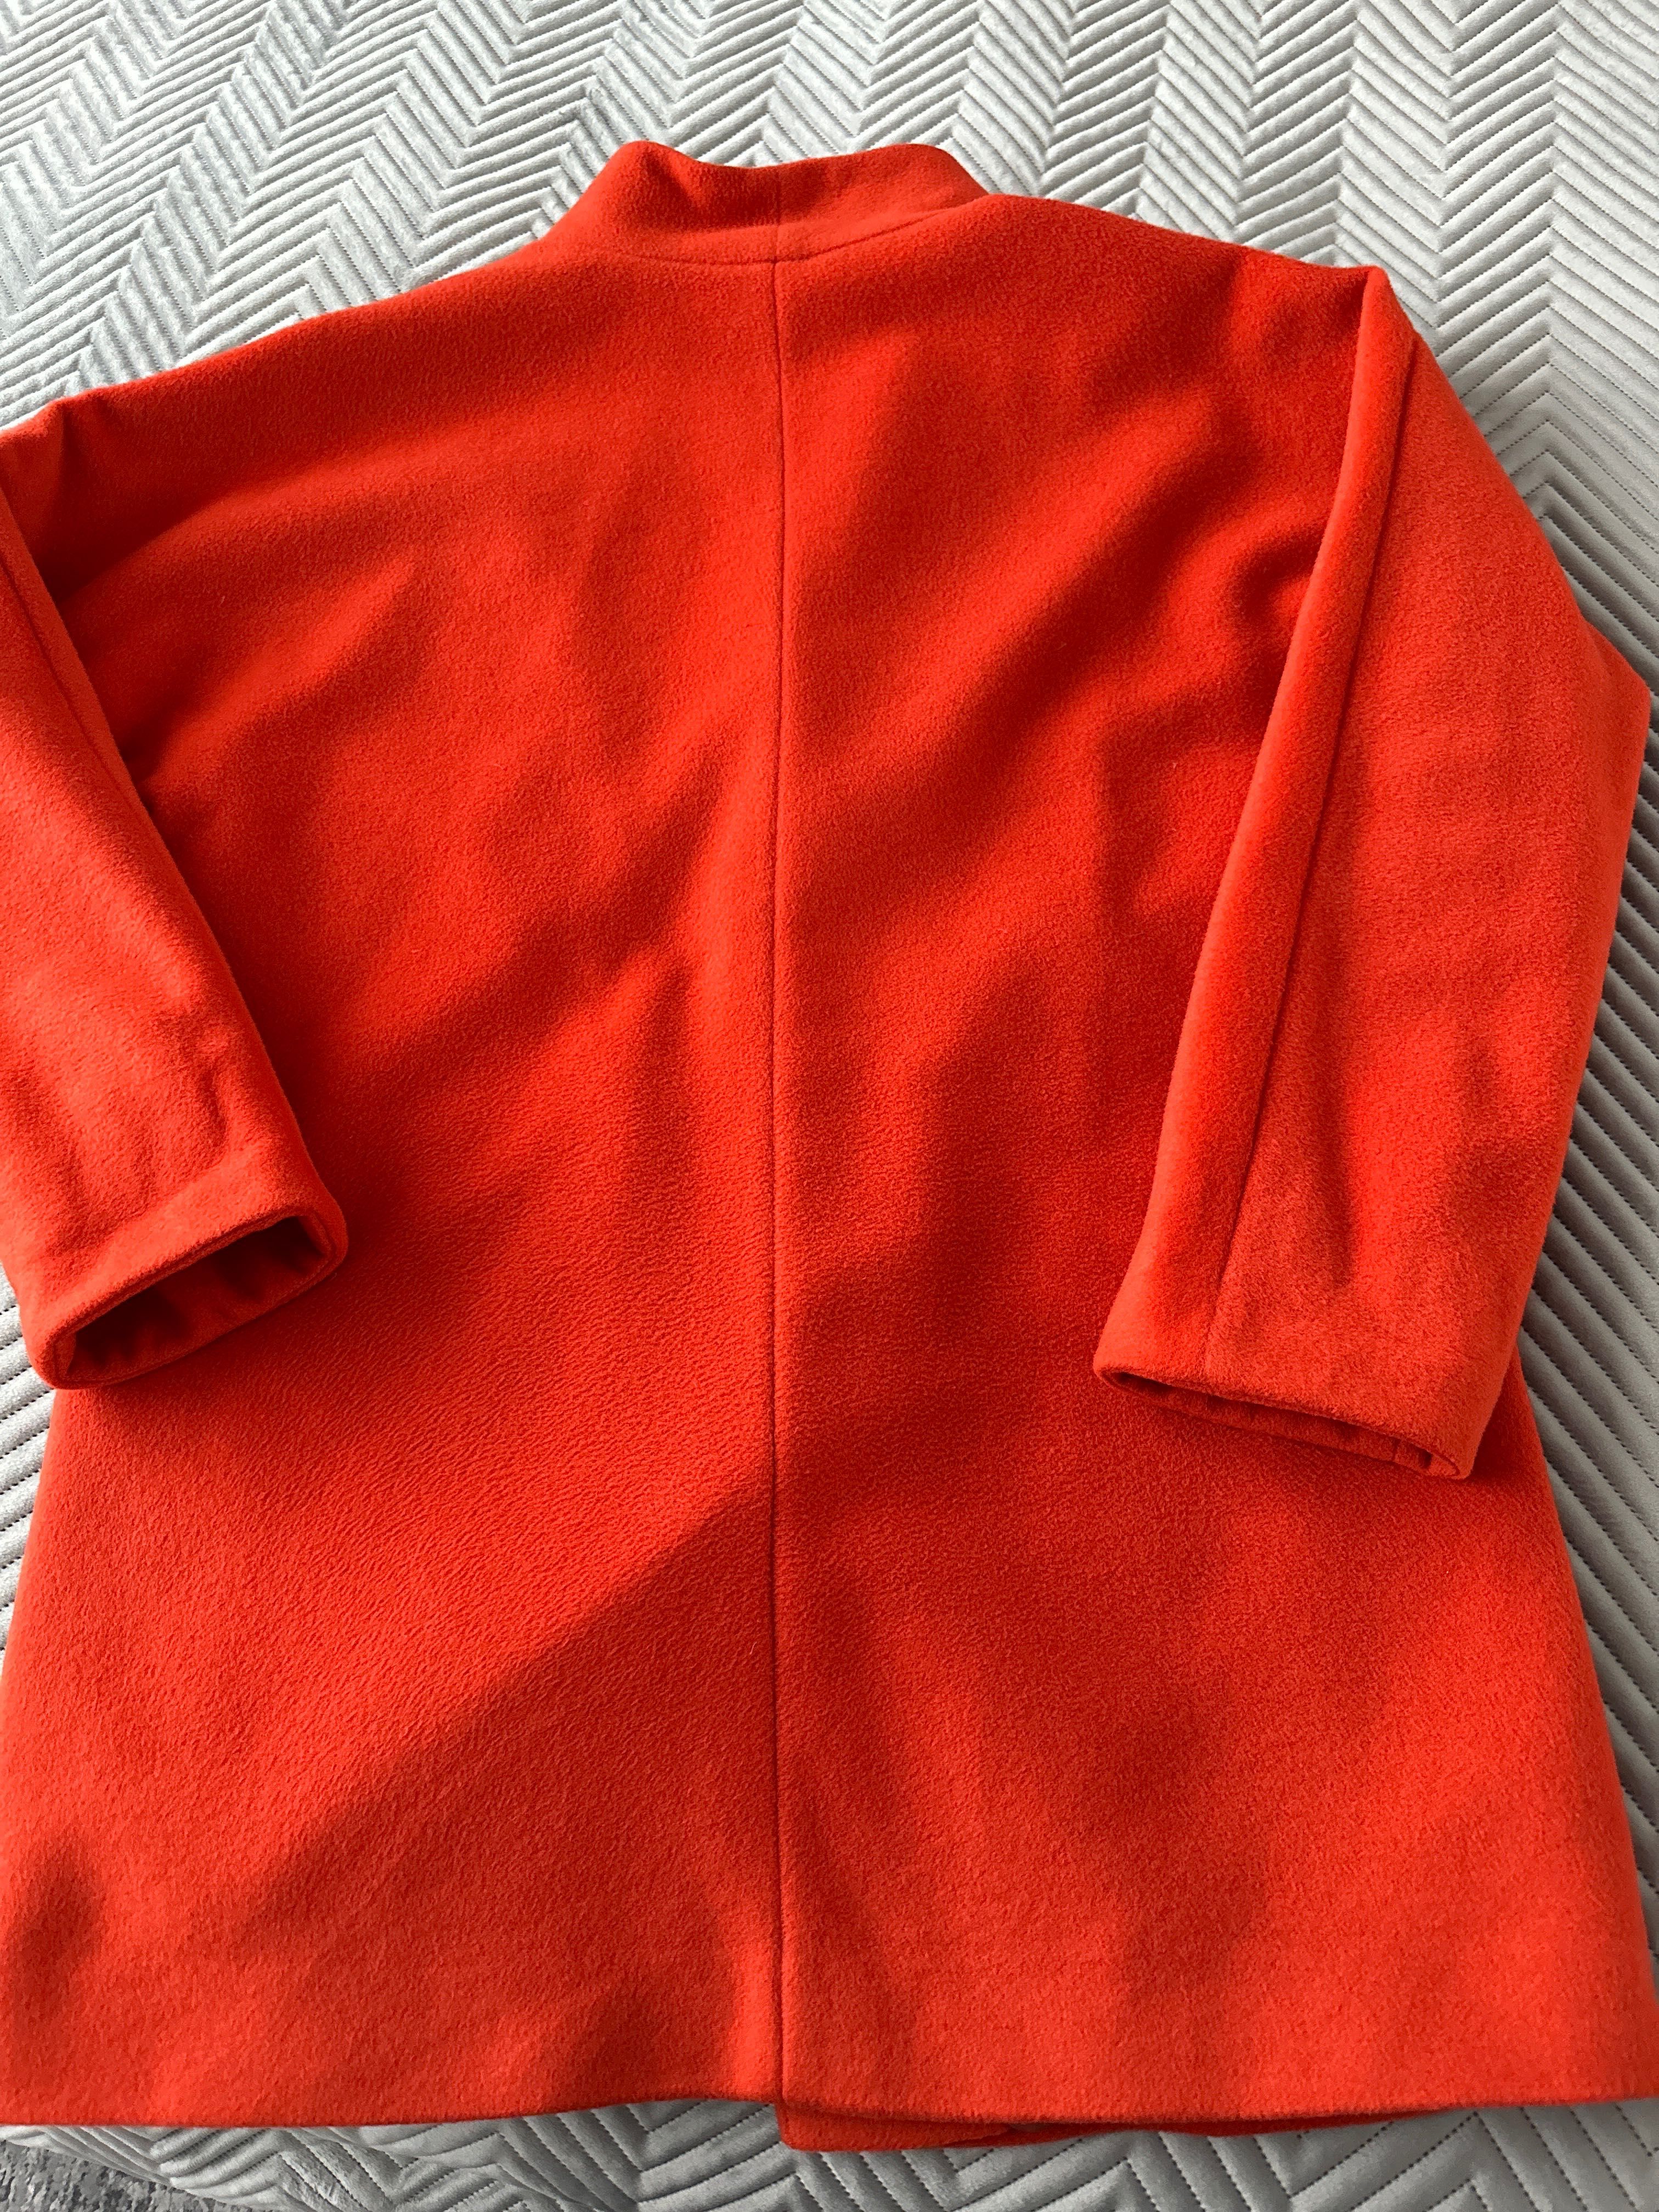 Płaszcz jesiennydamski marki Hexeline, rozmiar 36.